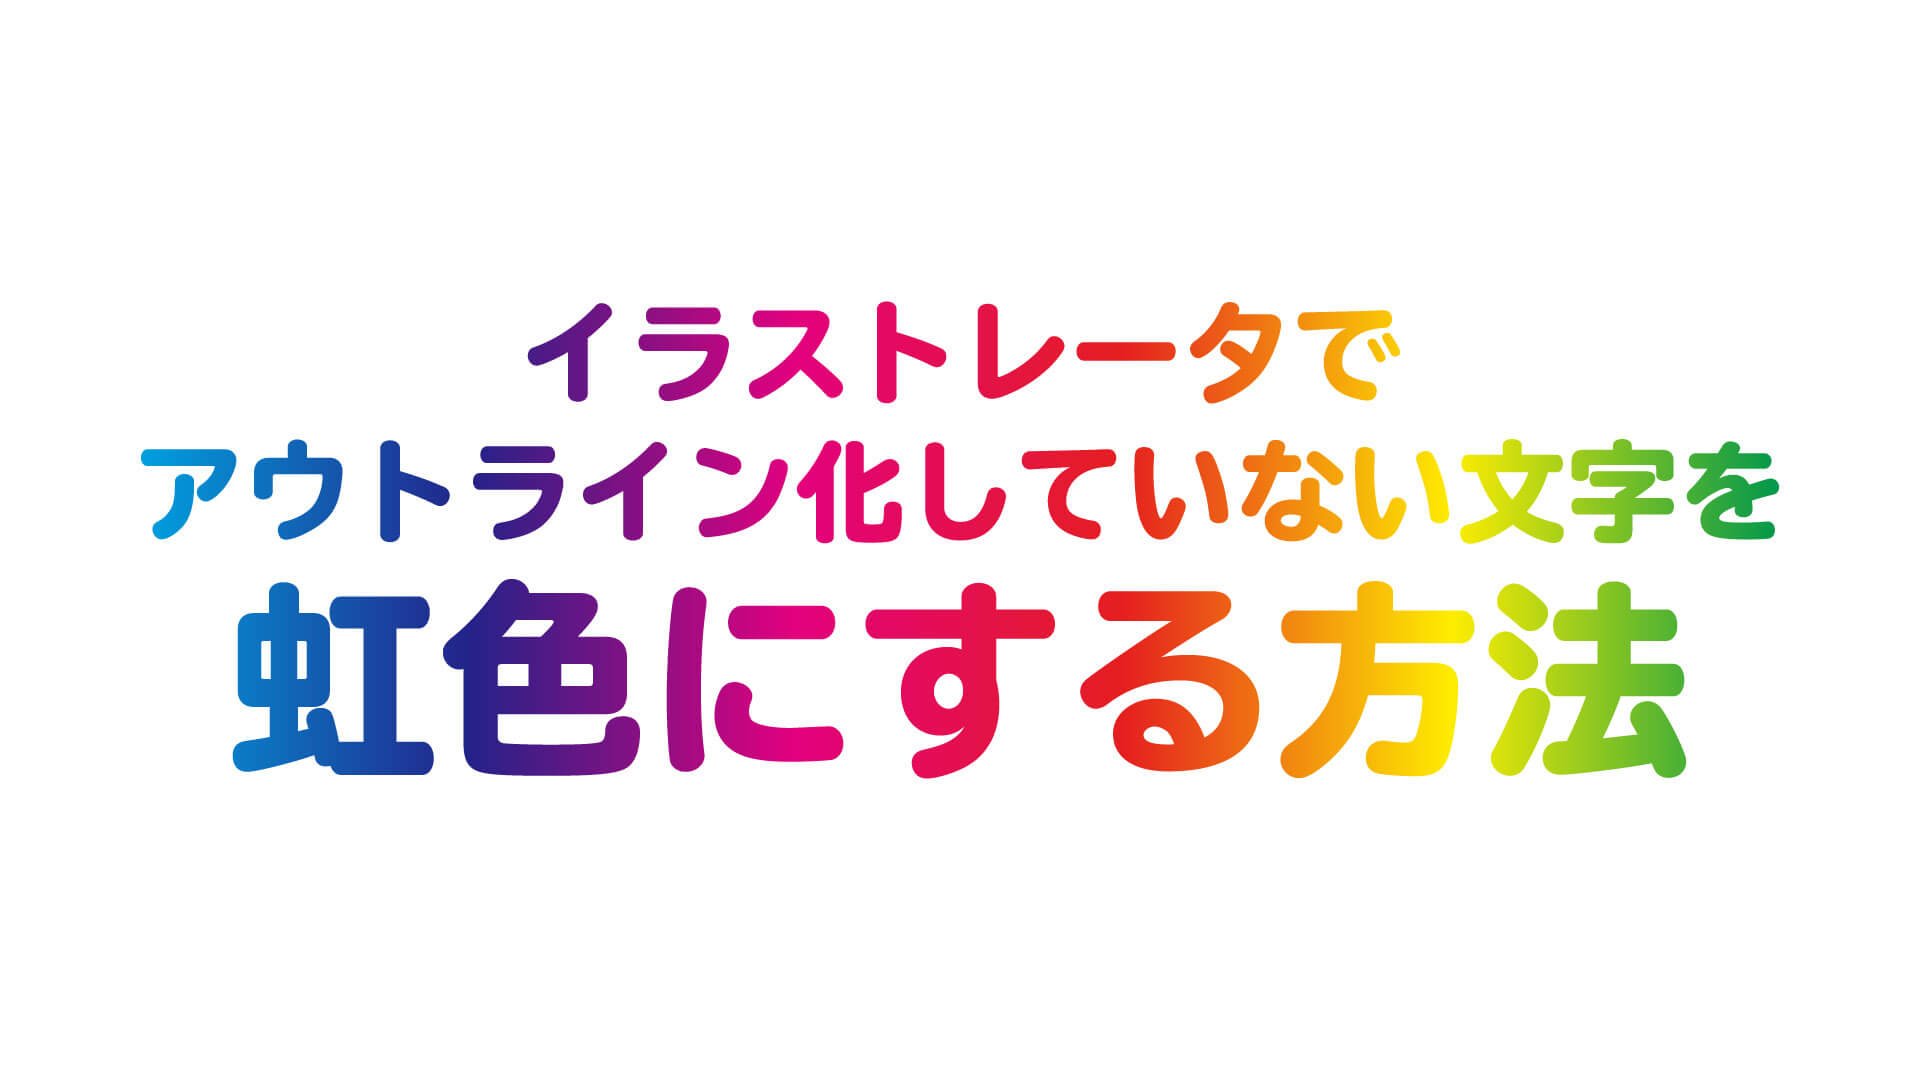 Illustratorでアウトライン化していない文字を虹色にする方法 Webサイト制作会社 ホームページ制作会社 株式会社296 川崎 横浜